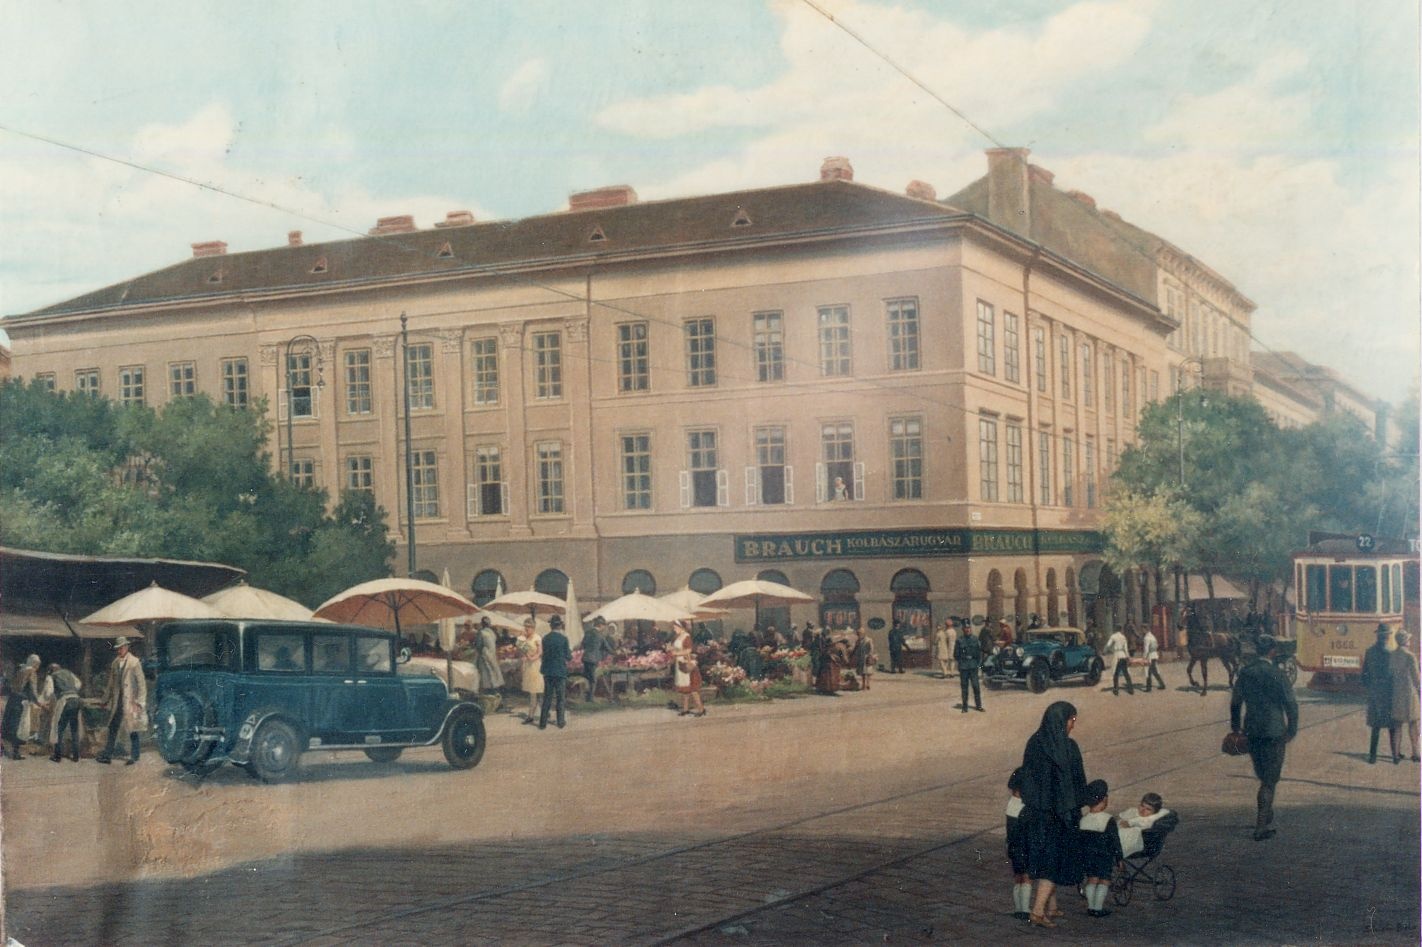 Brauch Ferenc kolbászárugyár Budapest 1930 körül (Magyar Kereskedelmi és Vendéglátóipari Múzeum CC BY-NC-ND)